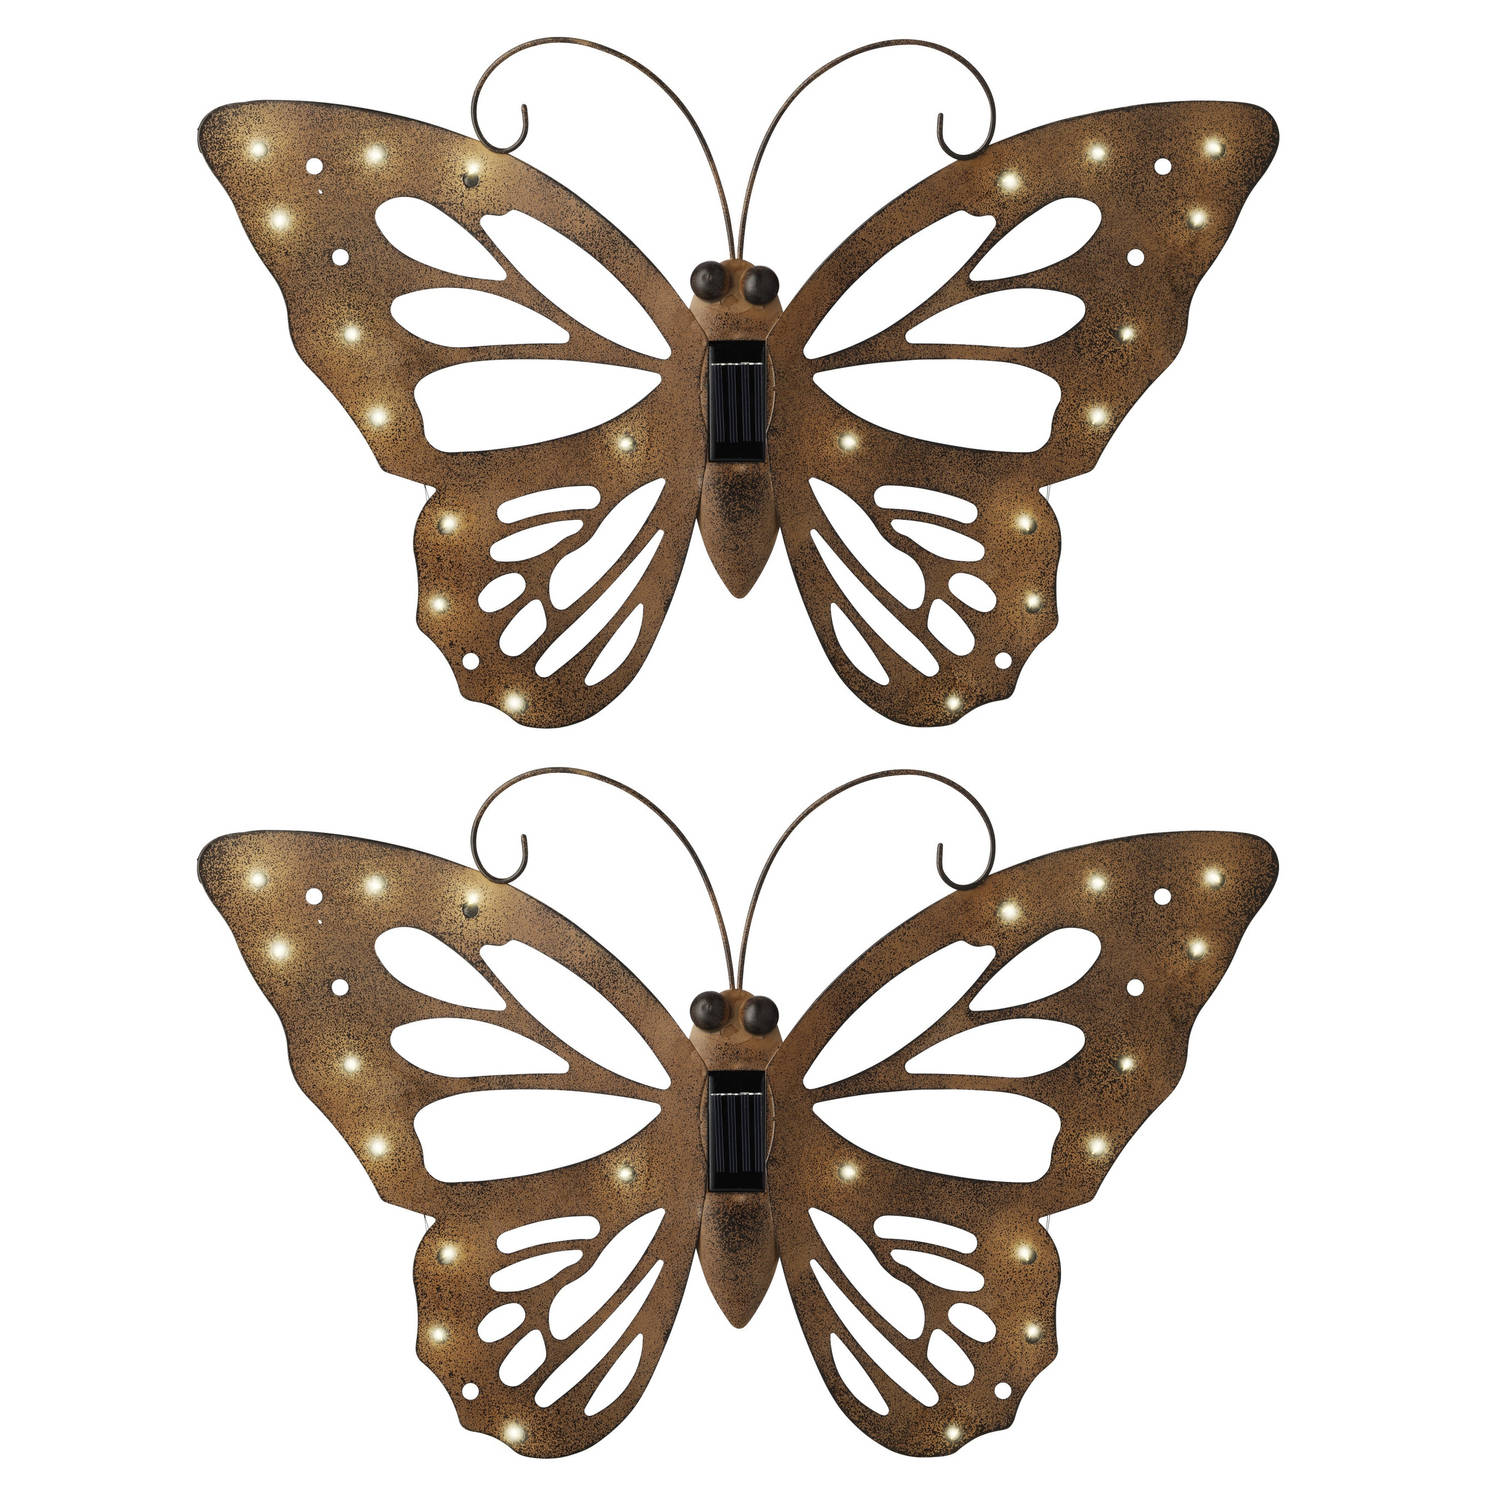 Vergevingsgezind Exclusief efficiëntie IJzeren decoratie vlinder met solar verlichting 53 x 35 cm - Tuinbeelden |  Blokker